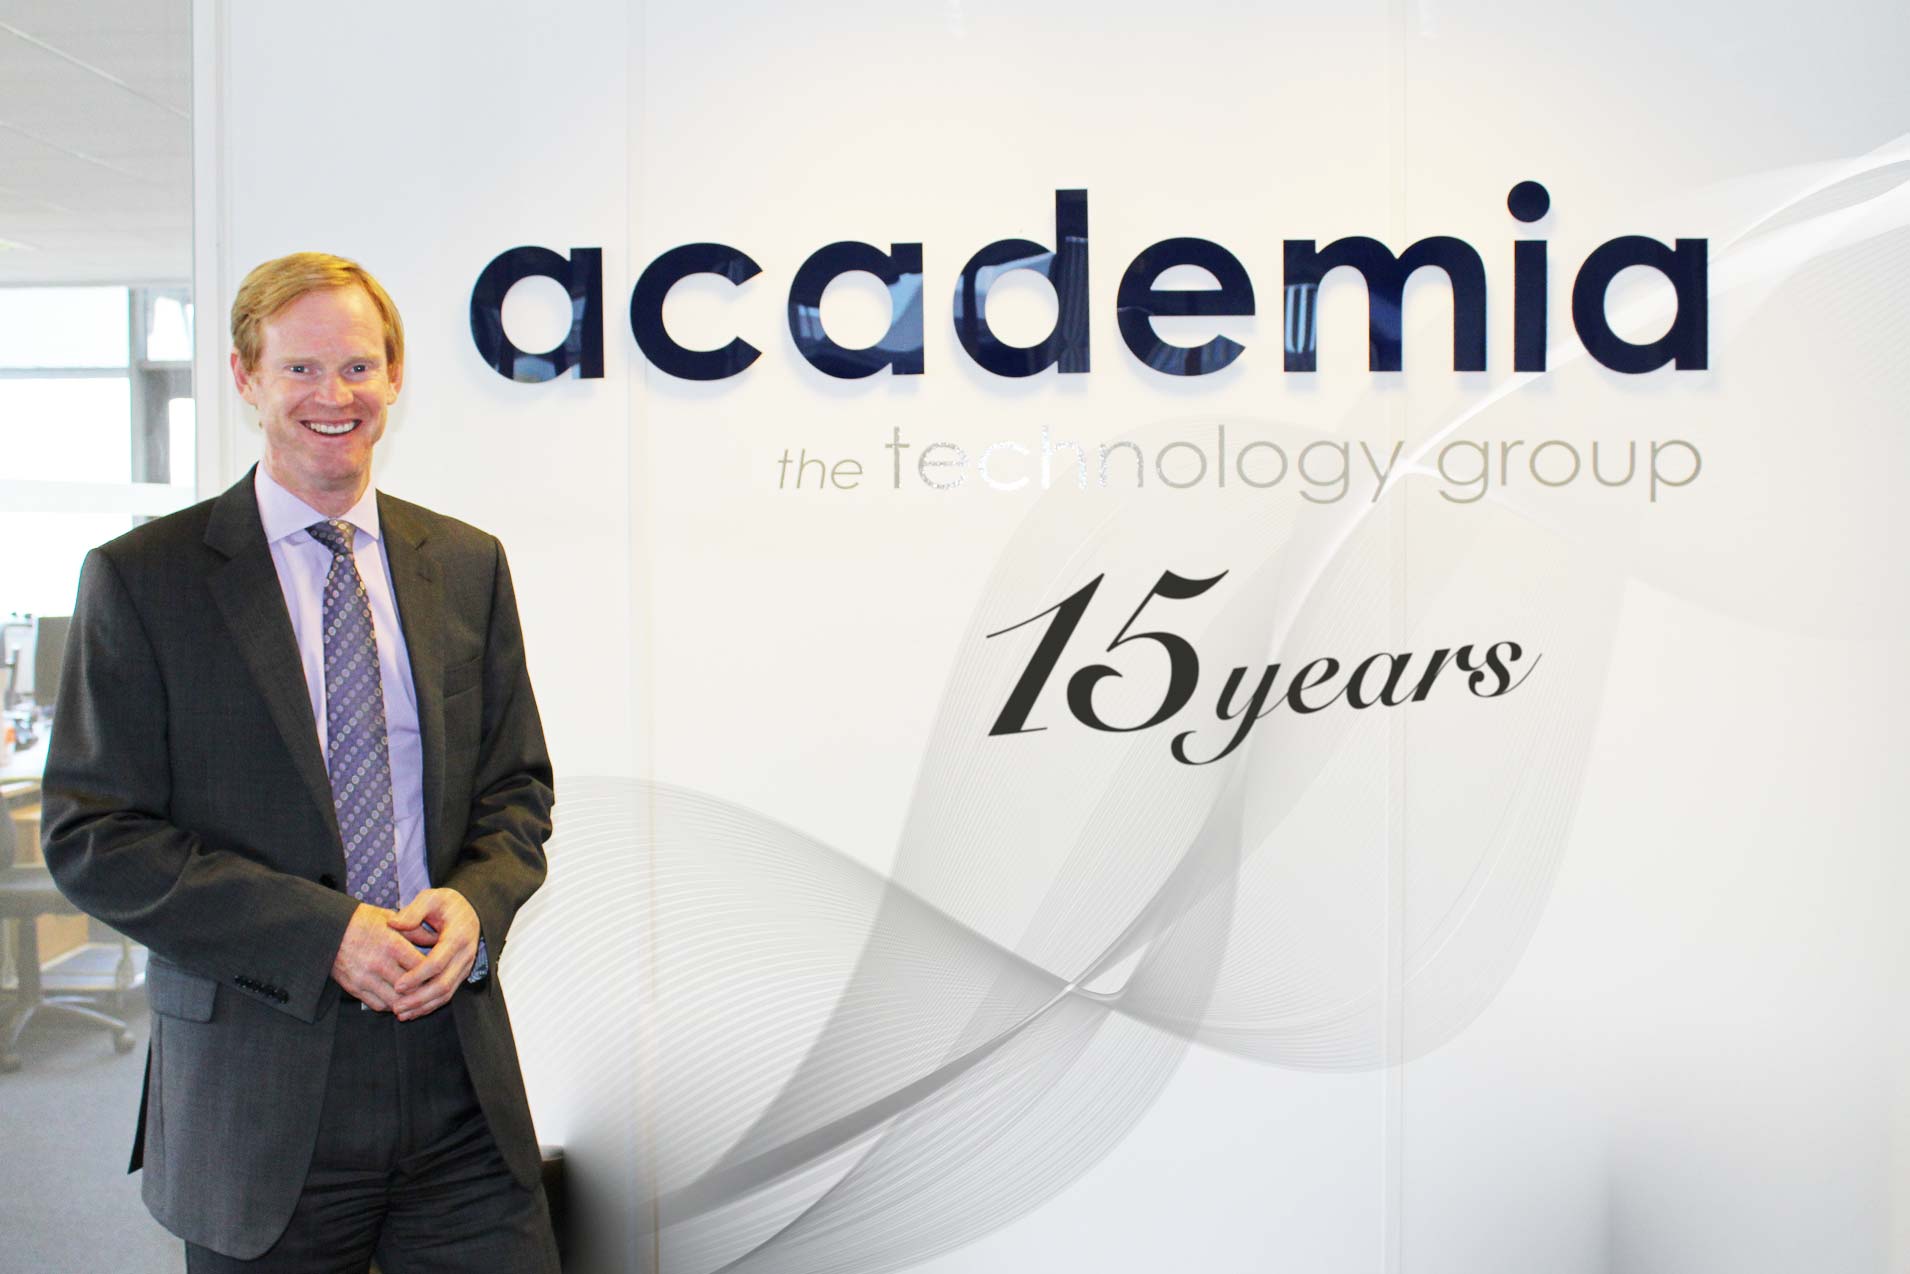 Academia 15 years